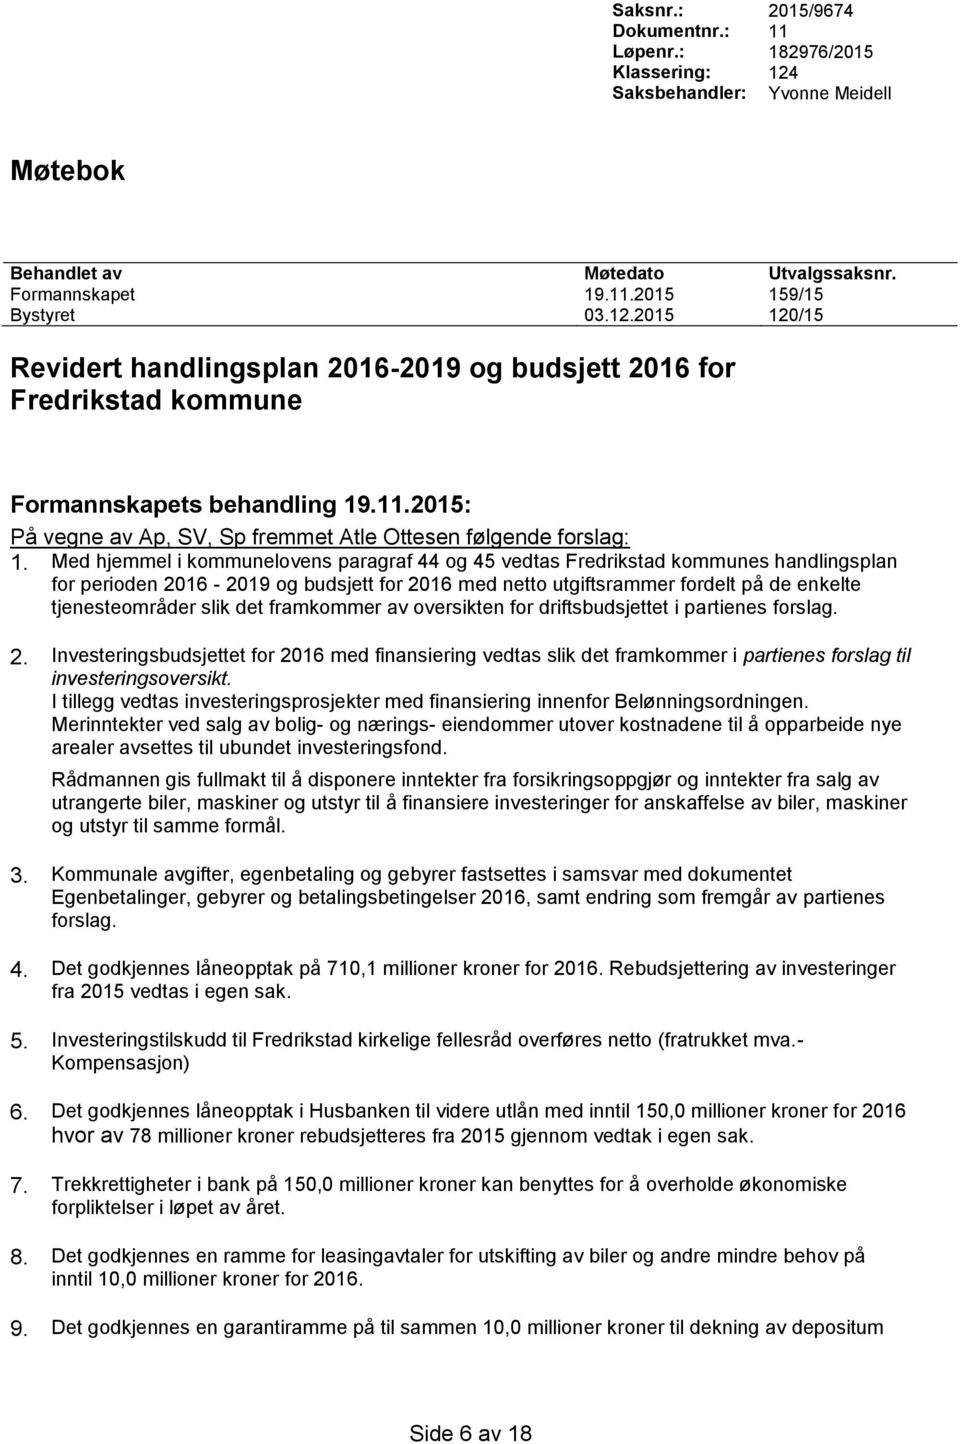 Med hjemmel i kommunelovens paragraf 44 og 45 vedtas Fredrikstad kommunes handlingsplan for perioden 2016-2019 og budsjett for 2016 med netto utgiftsrammer fordelt på de enkelte tjenesteområder slik